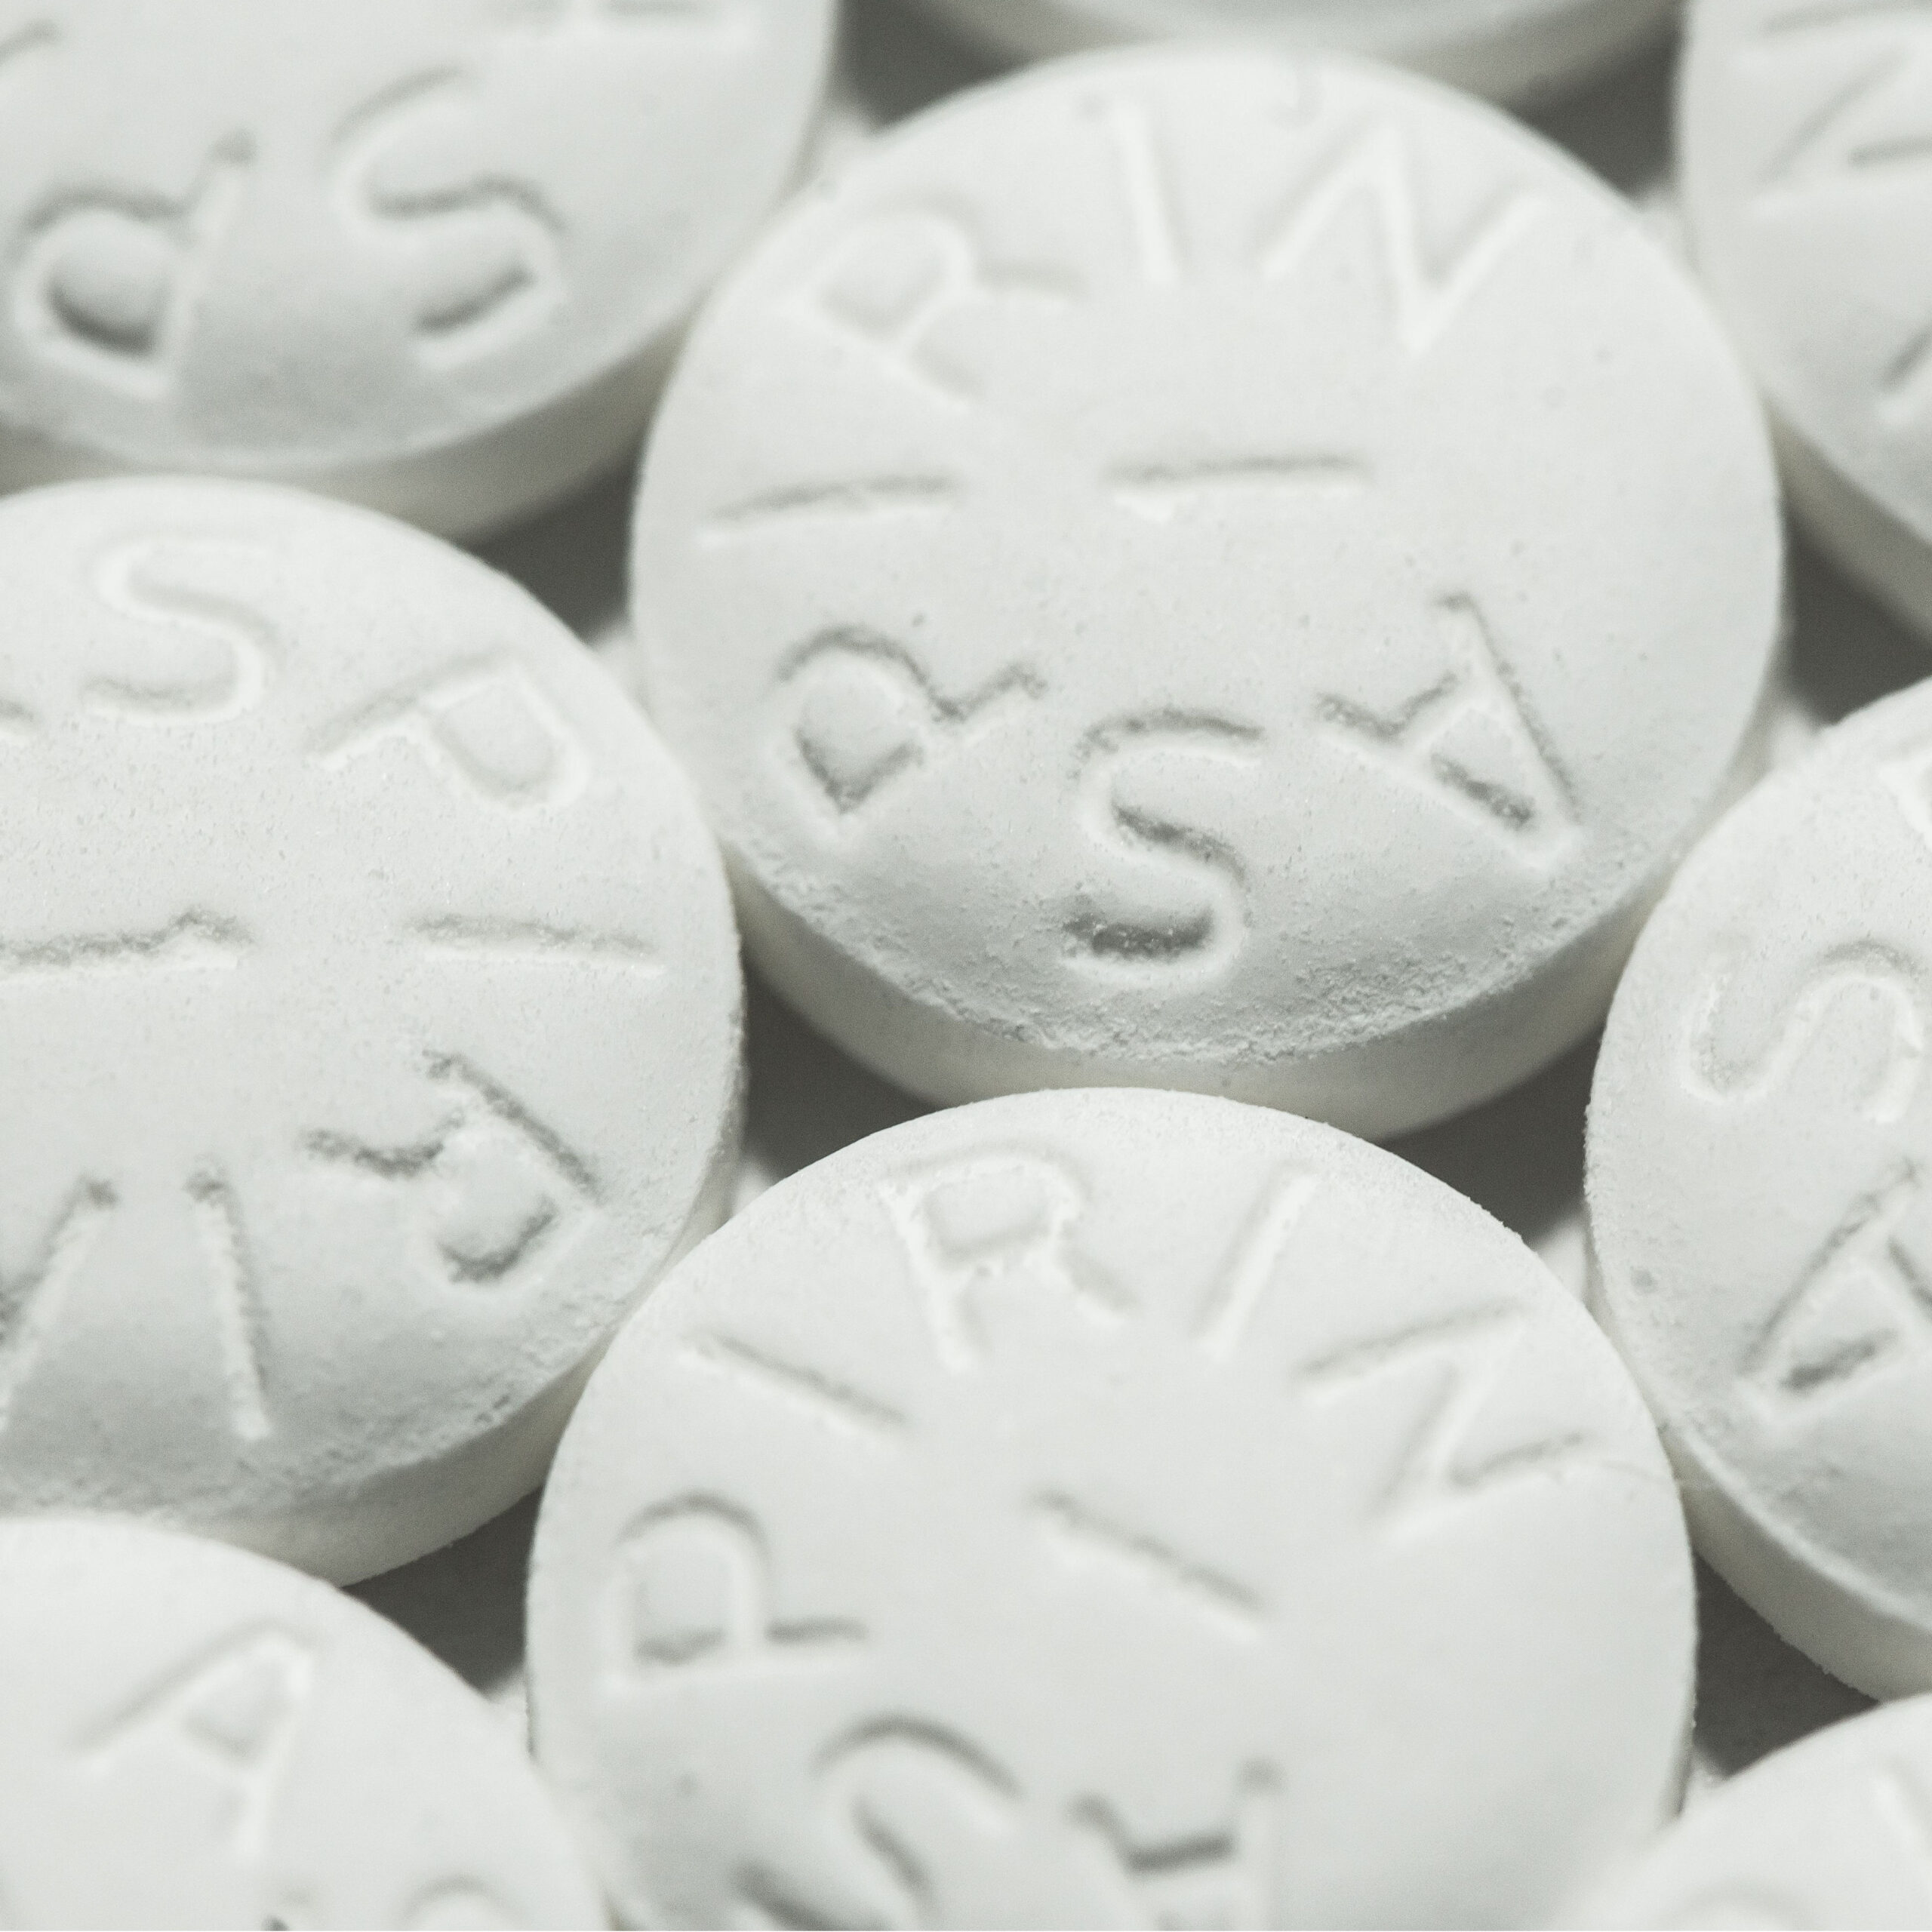 multiple aspirin tablets